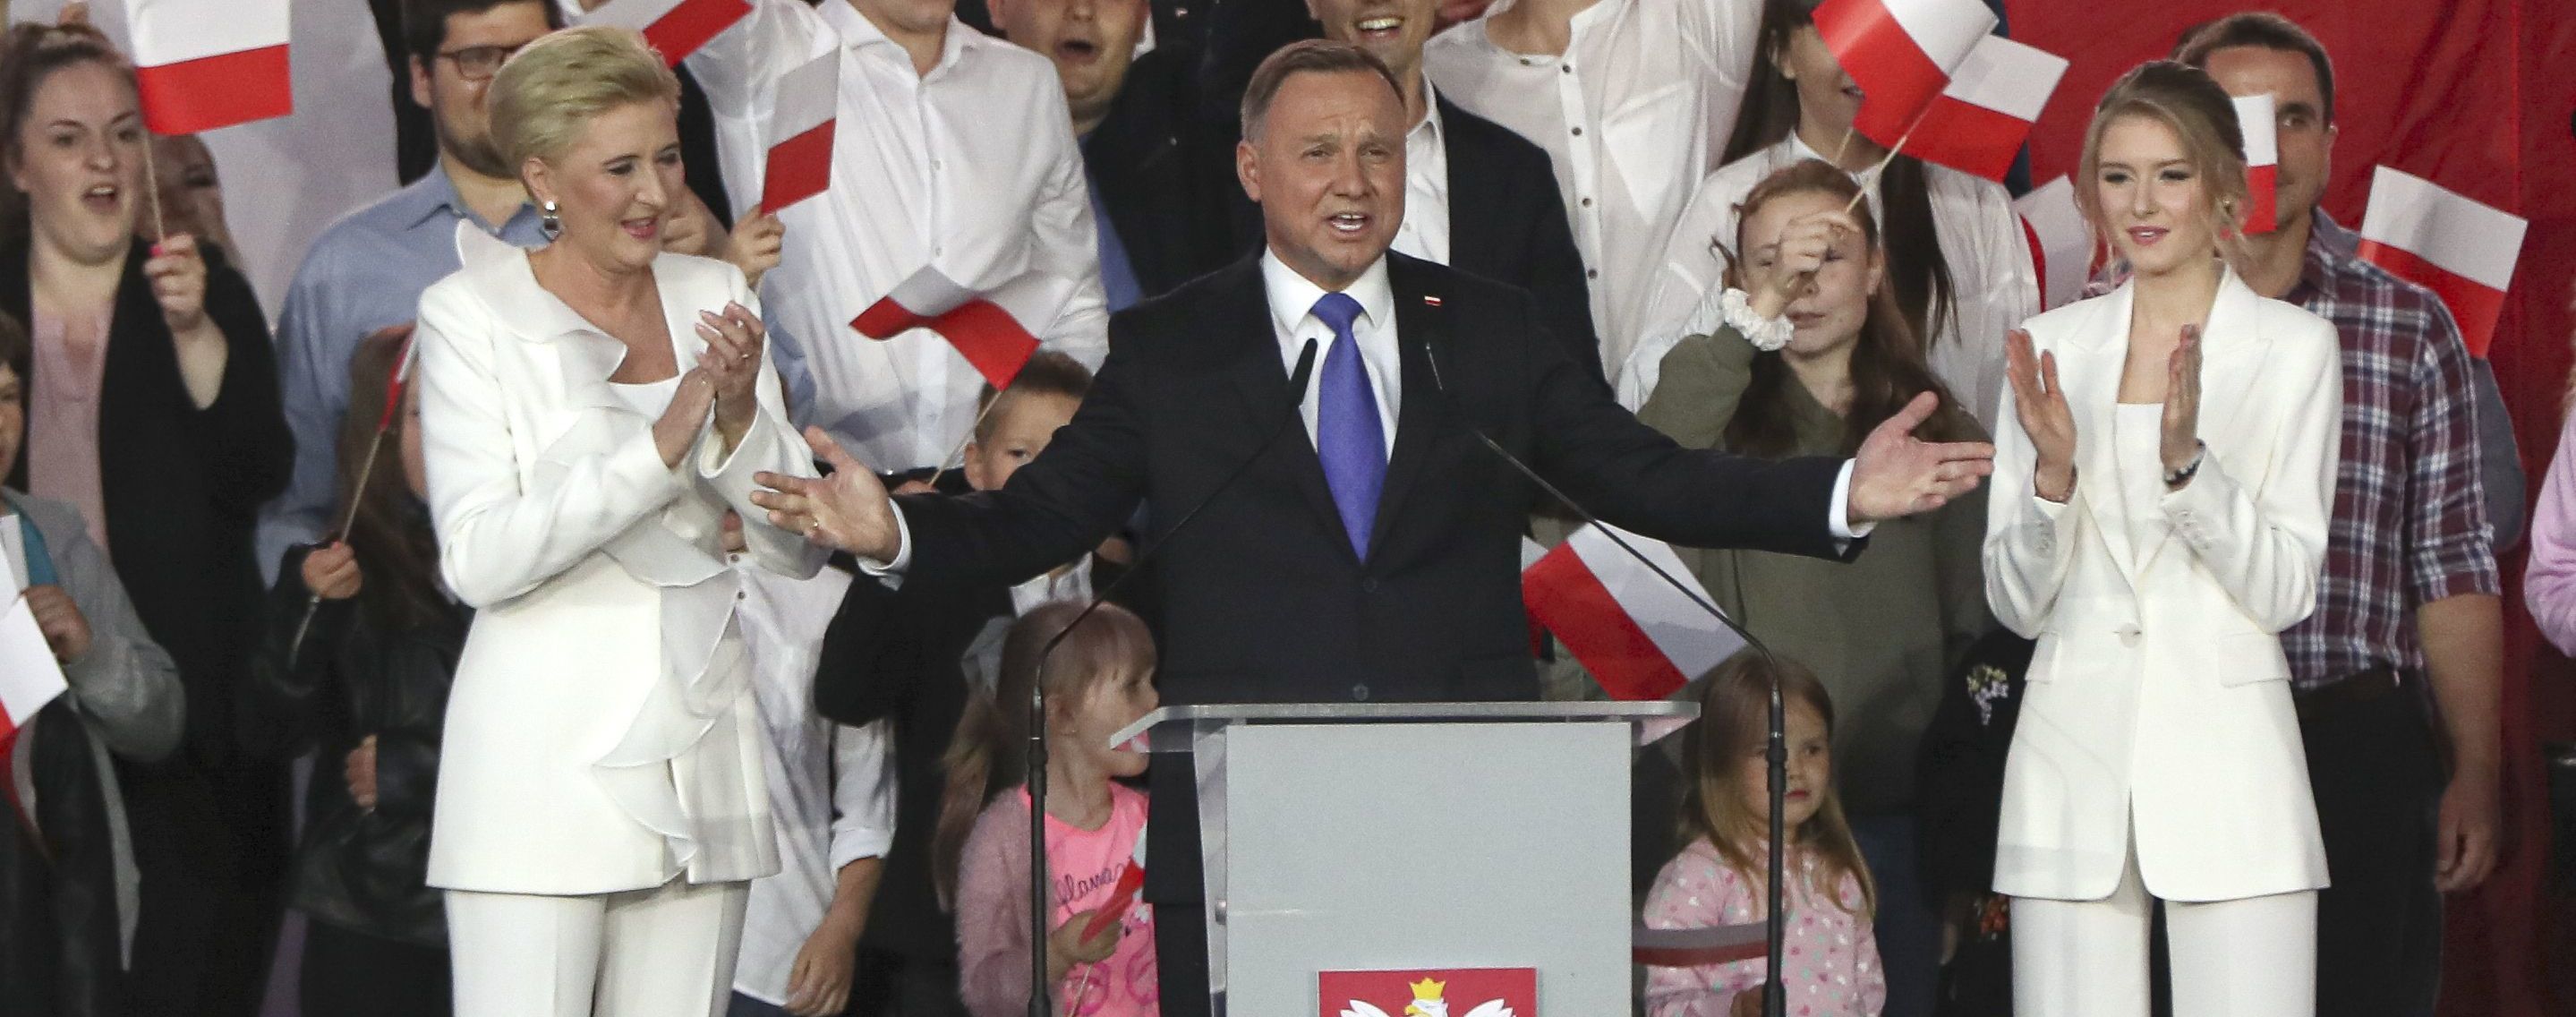 Дуда победил на президентских выборах в Польше: что это означает для Украины